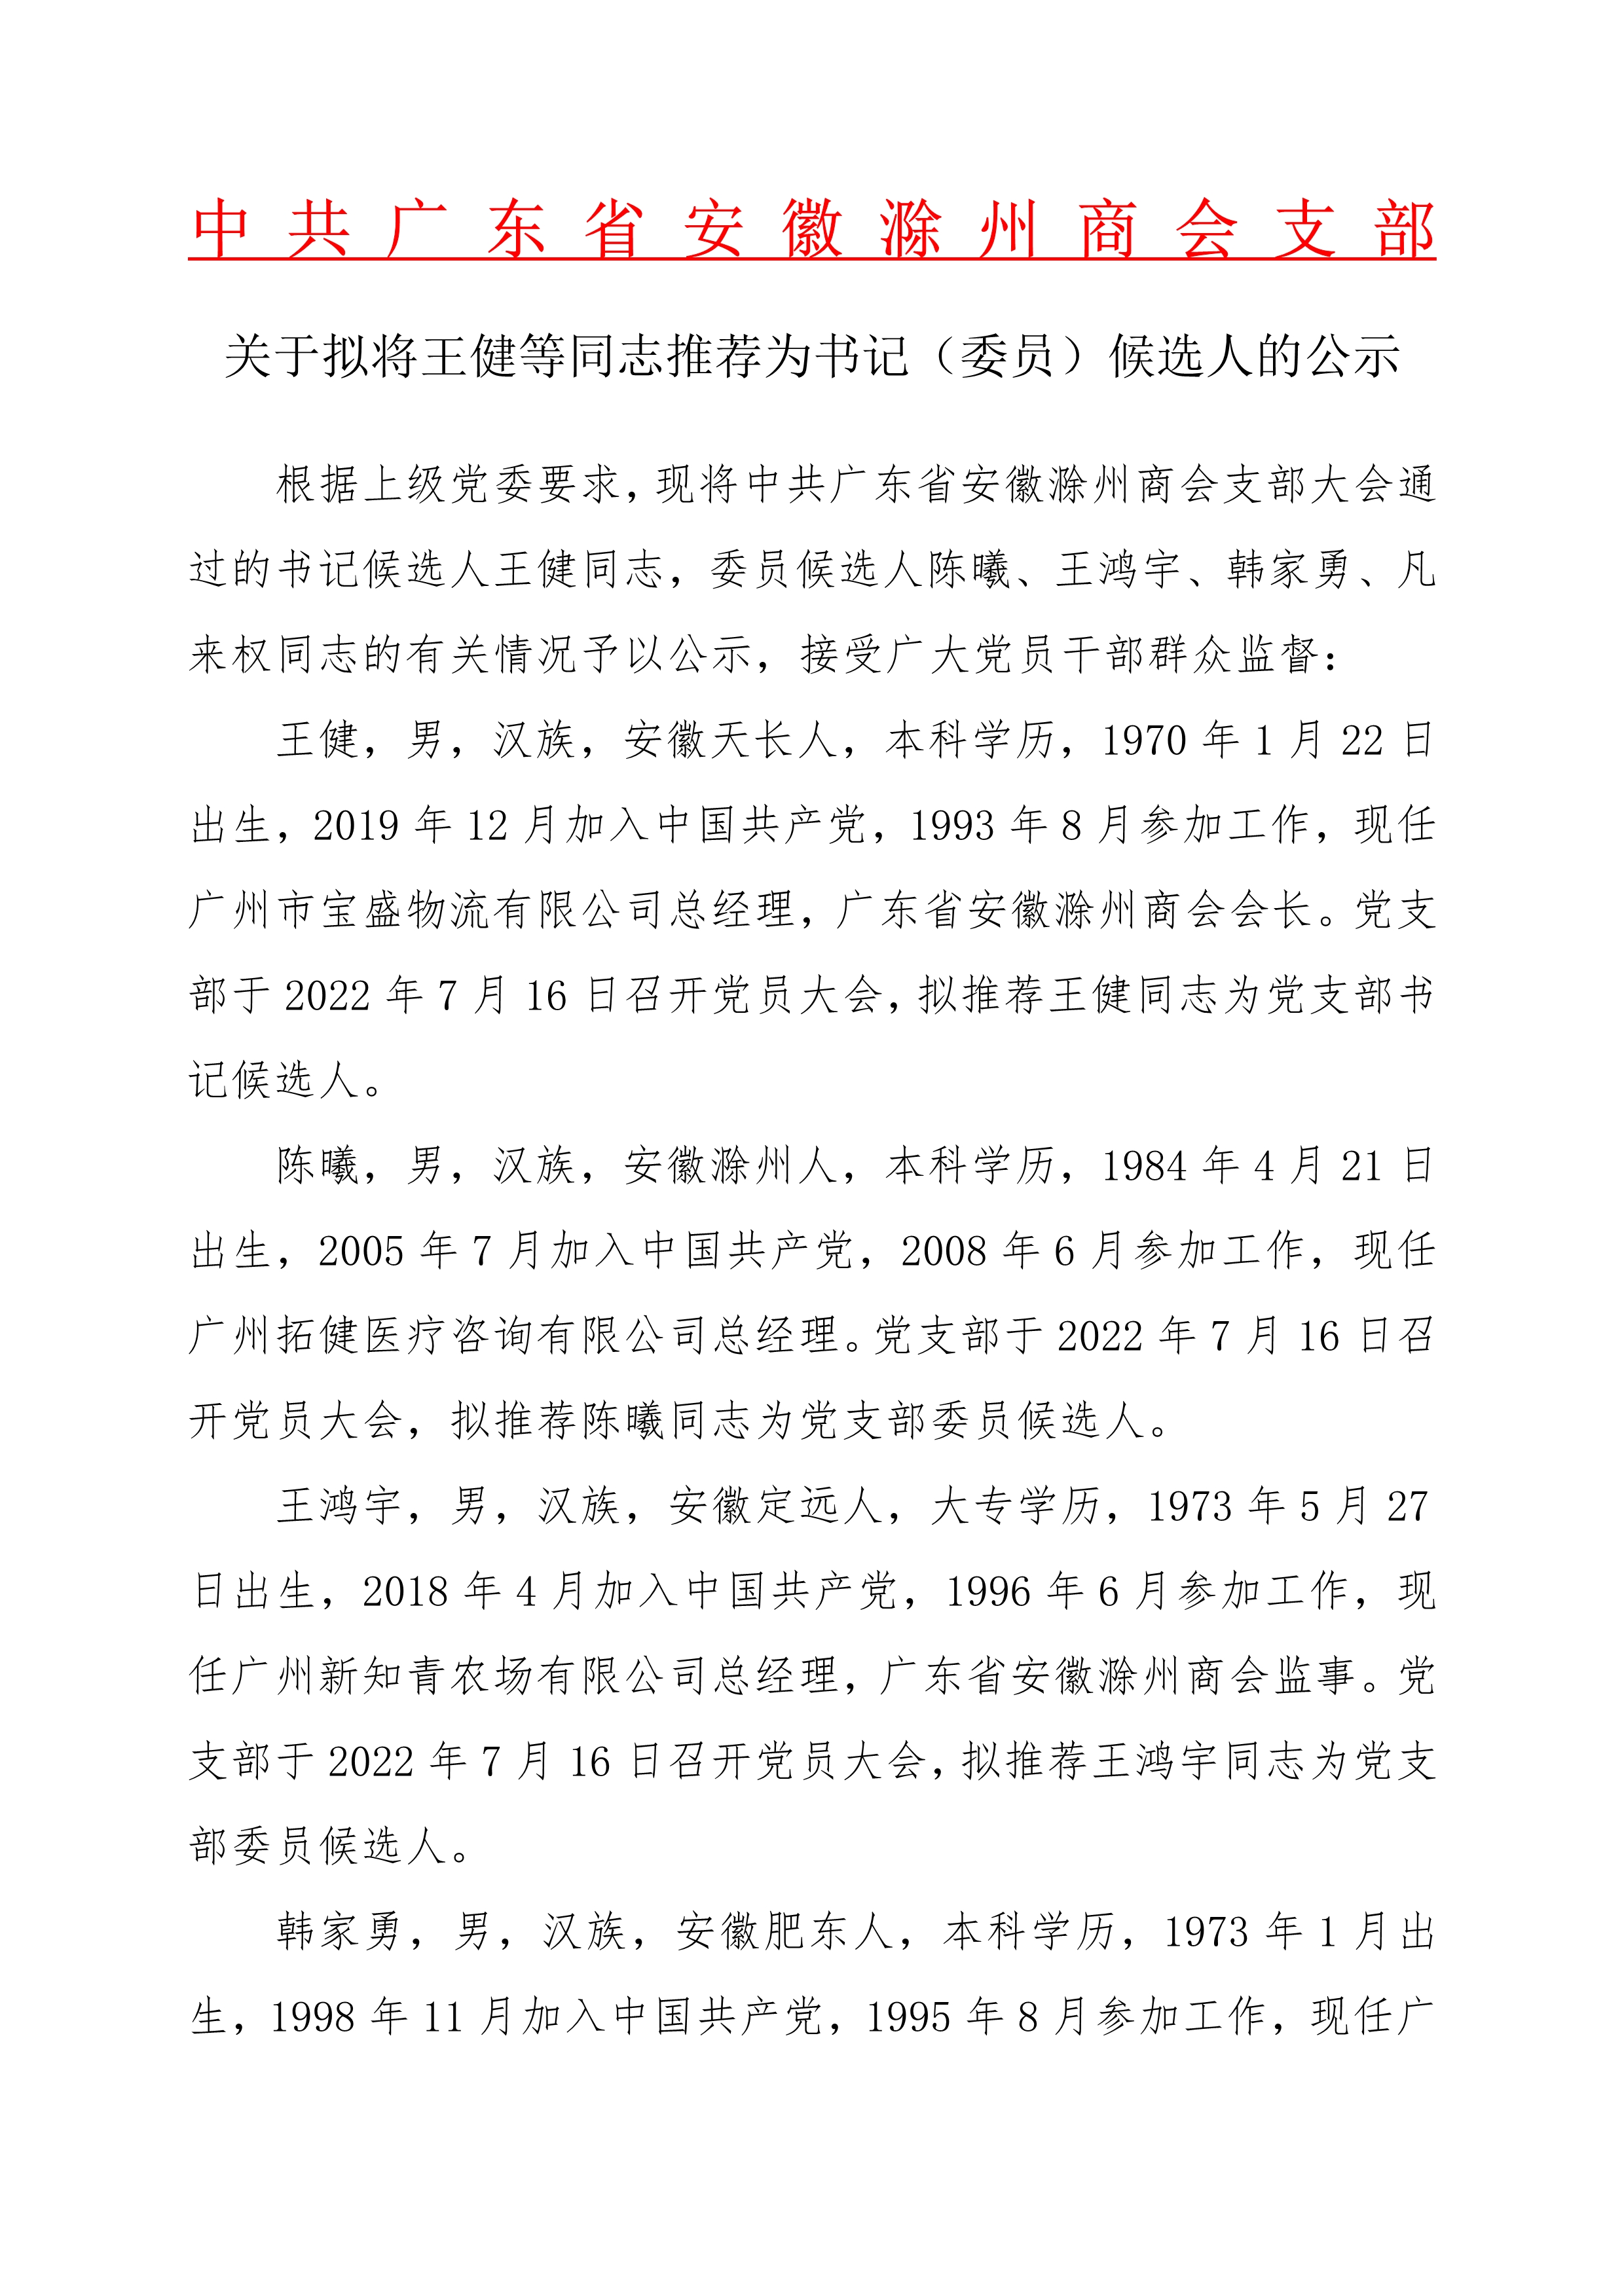 关于拟将王健等同志推荐为书记委员候选人的公示_1.Jpeg